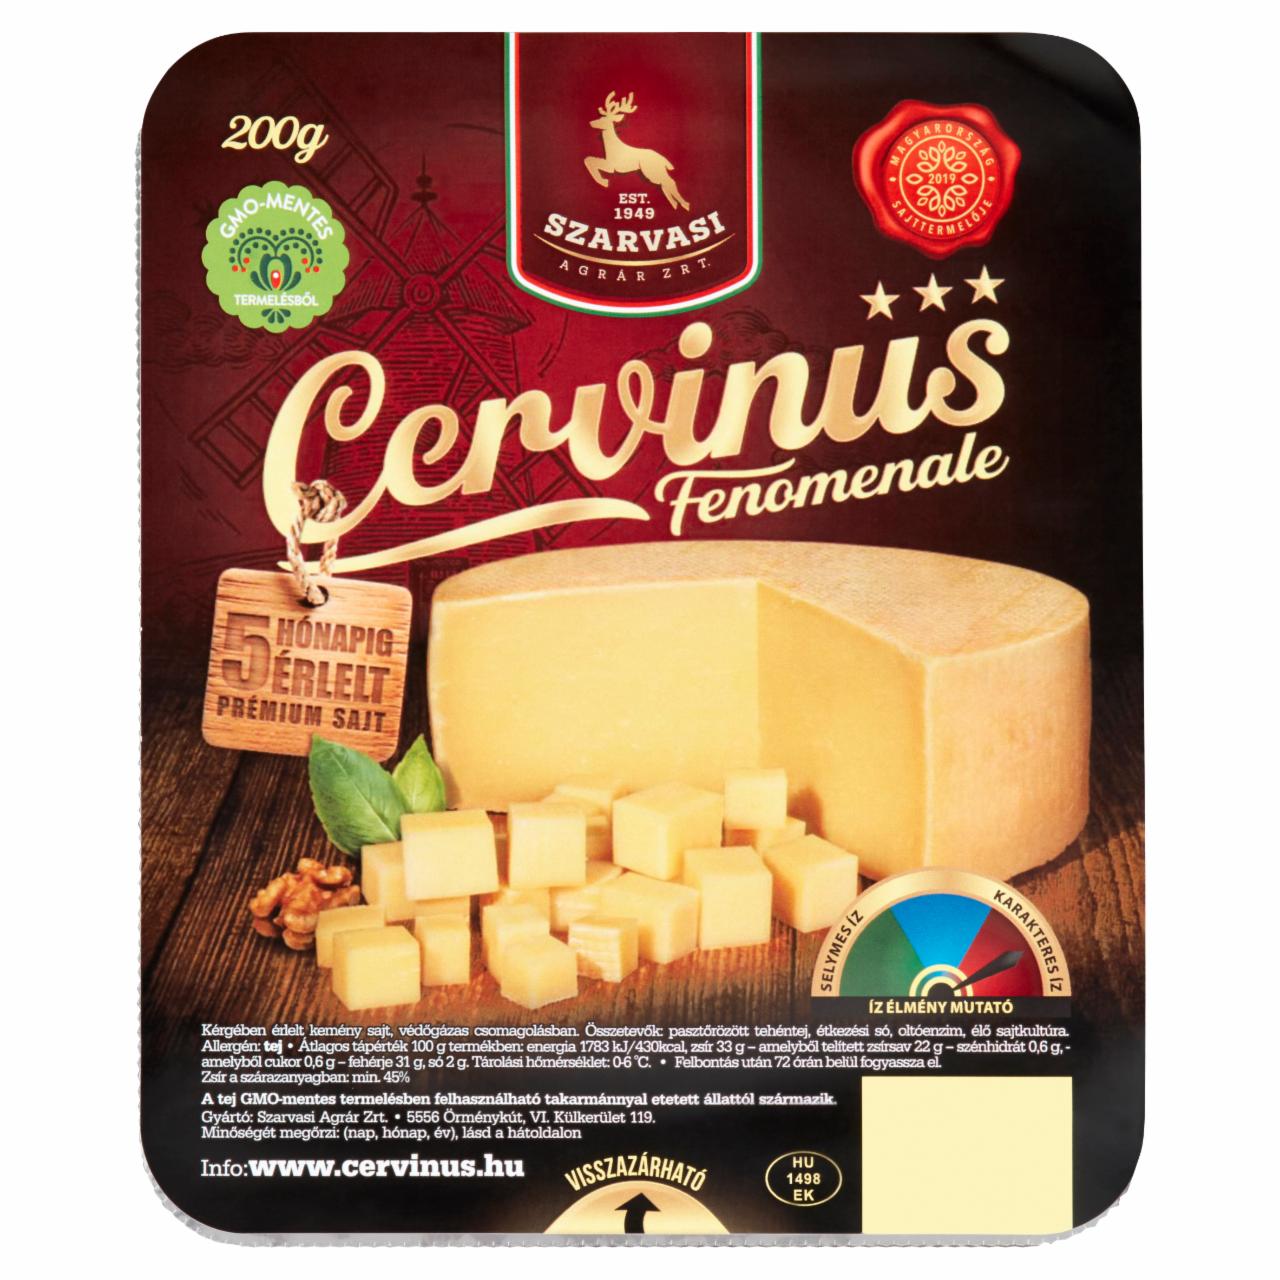 Képek - Szarvasi Cervinus Fenomenale kérgében érlelt kemény sajt 200 g